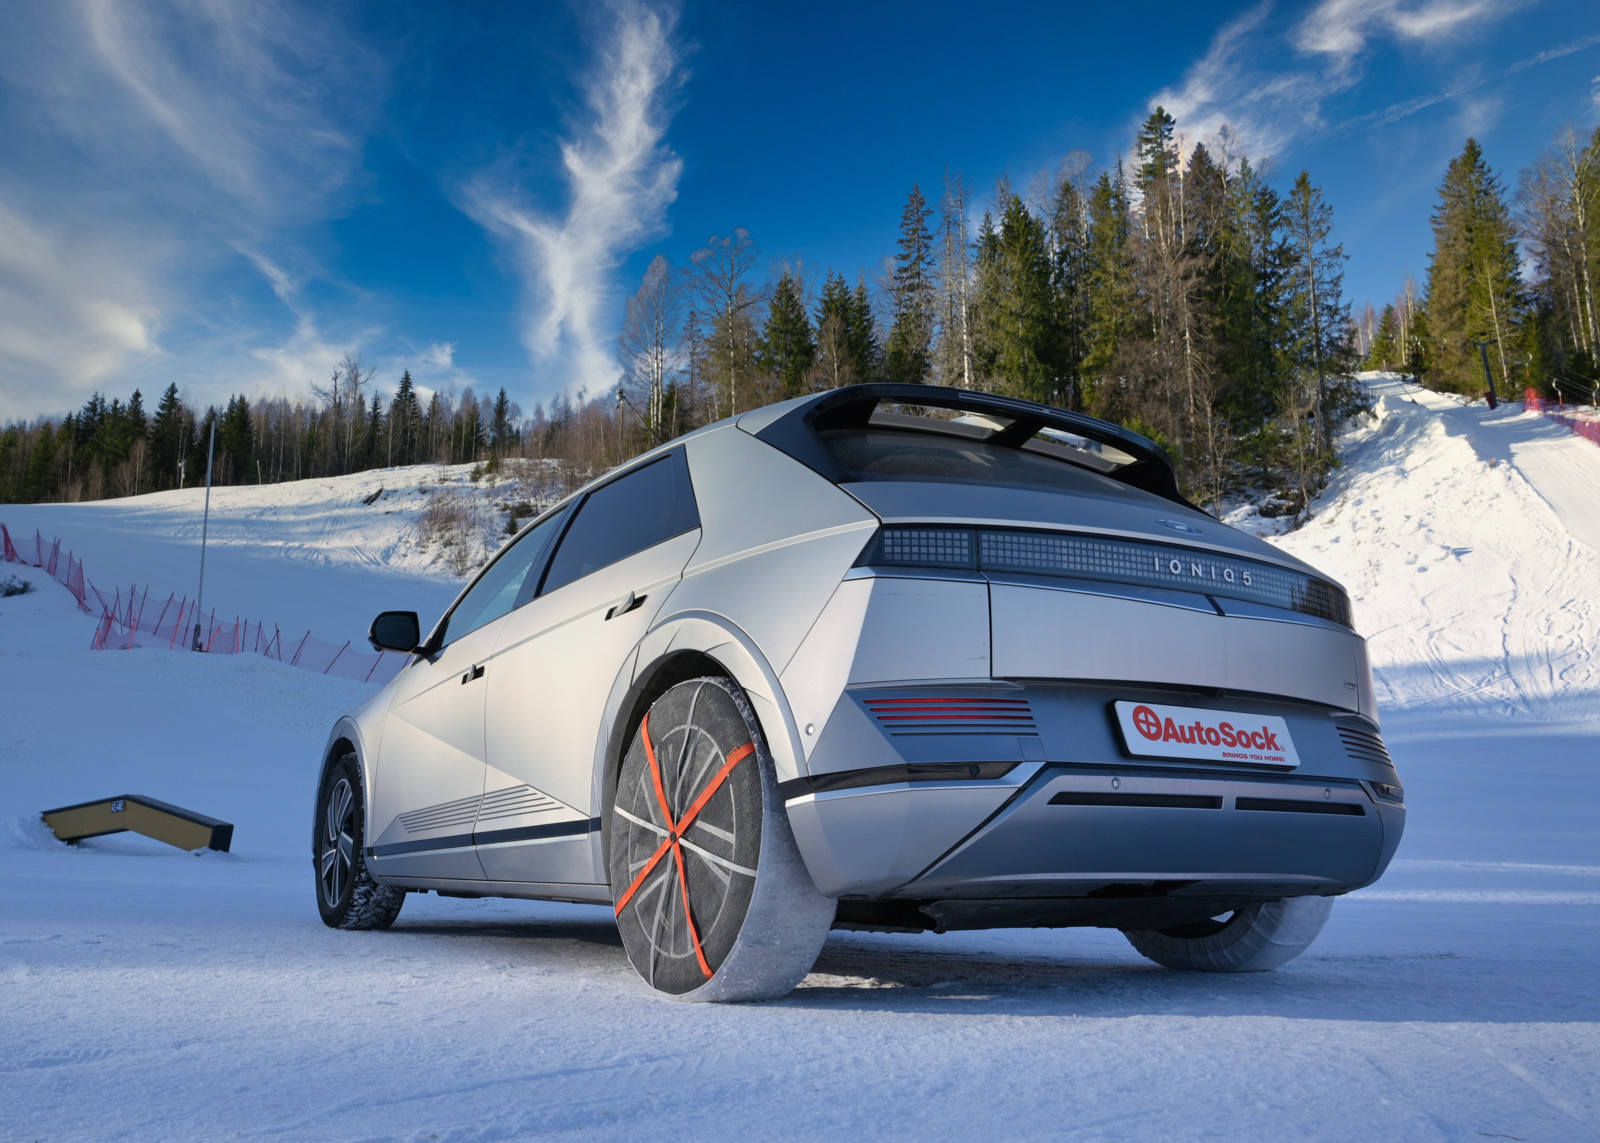 Das norwegische Unternehmen AutoSock bietet Reifen-Socken an, die das rutschen auf Eis und Schnee verhindern sollen.